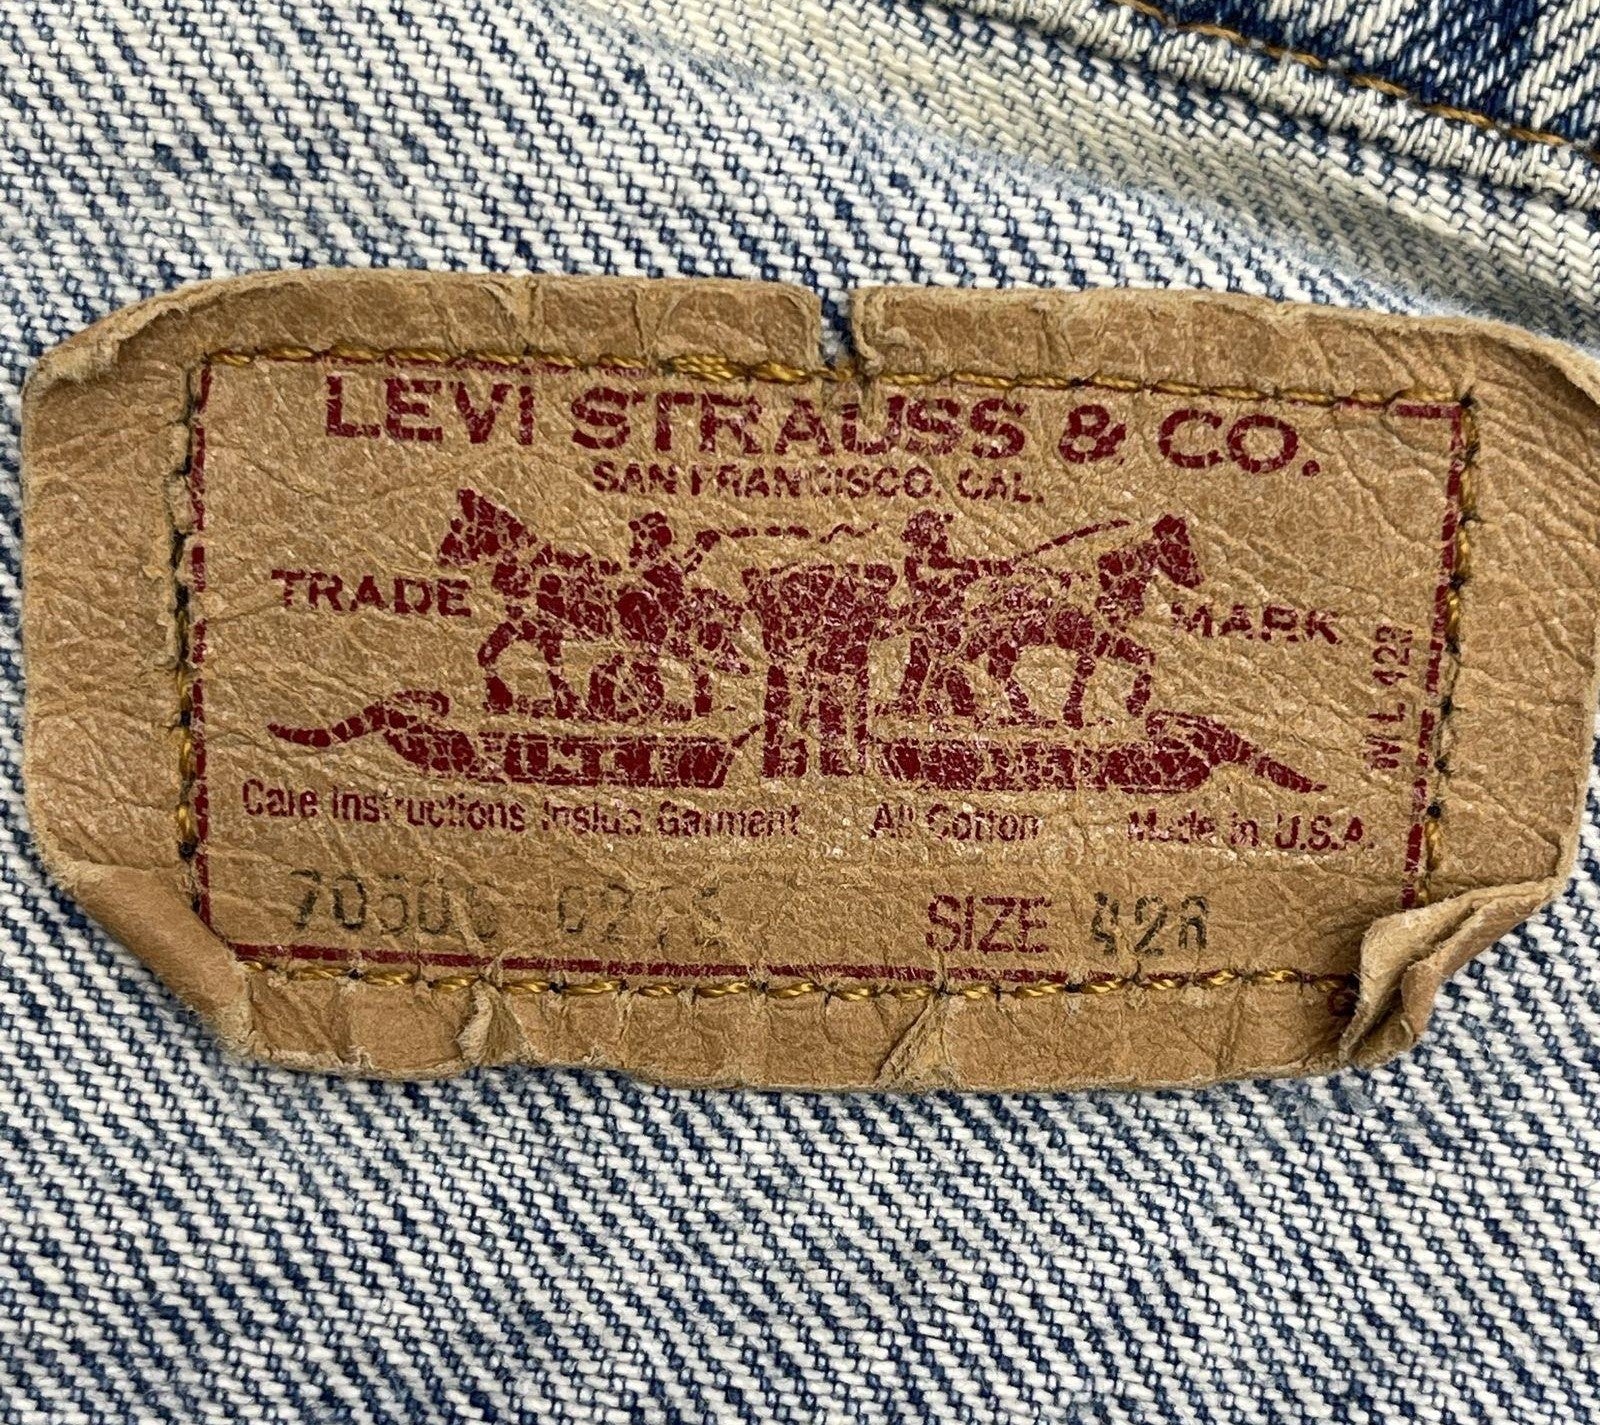 Vintage Made In USA Levi Strauss Denim Jean Trucker Jacket - Size 42R